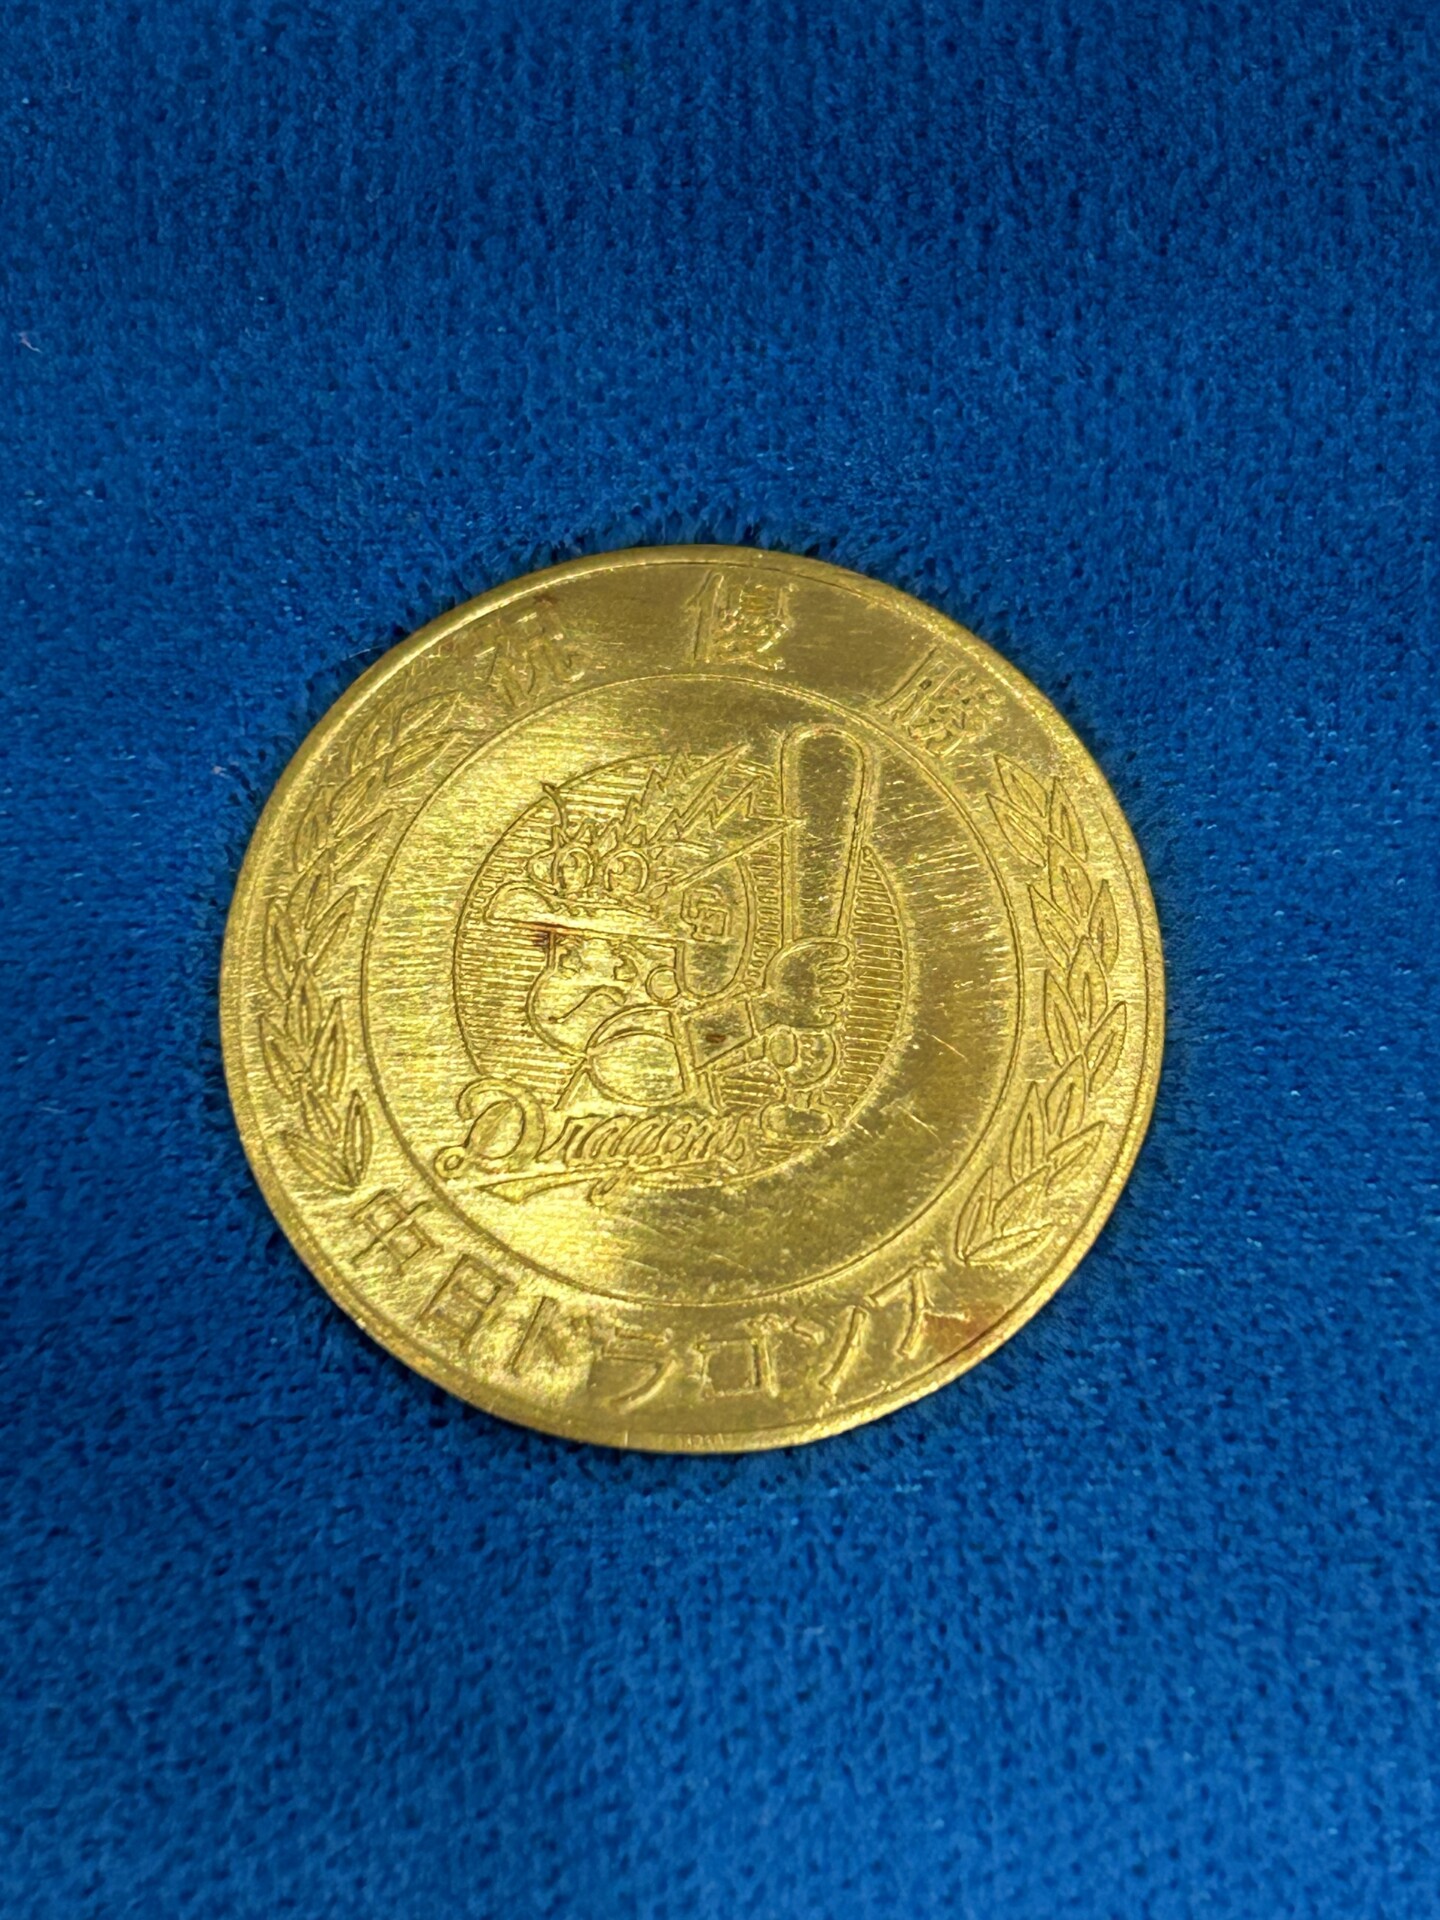 中日ドラゴンズ1982年優勝記念金メダル買取